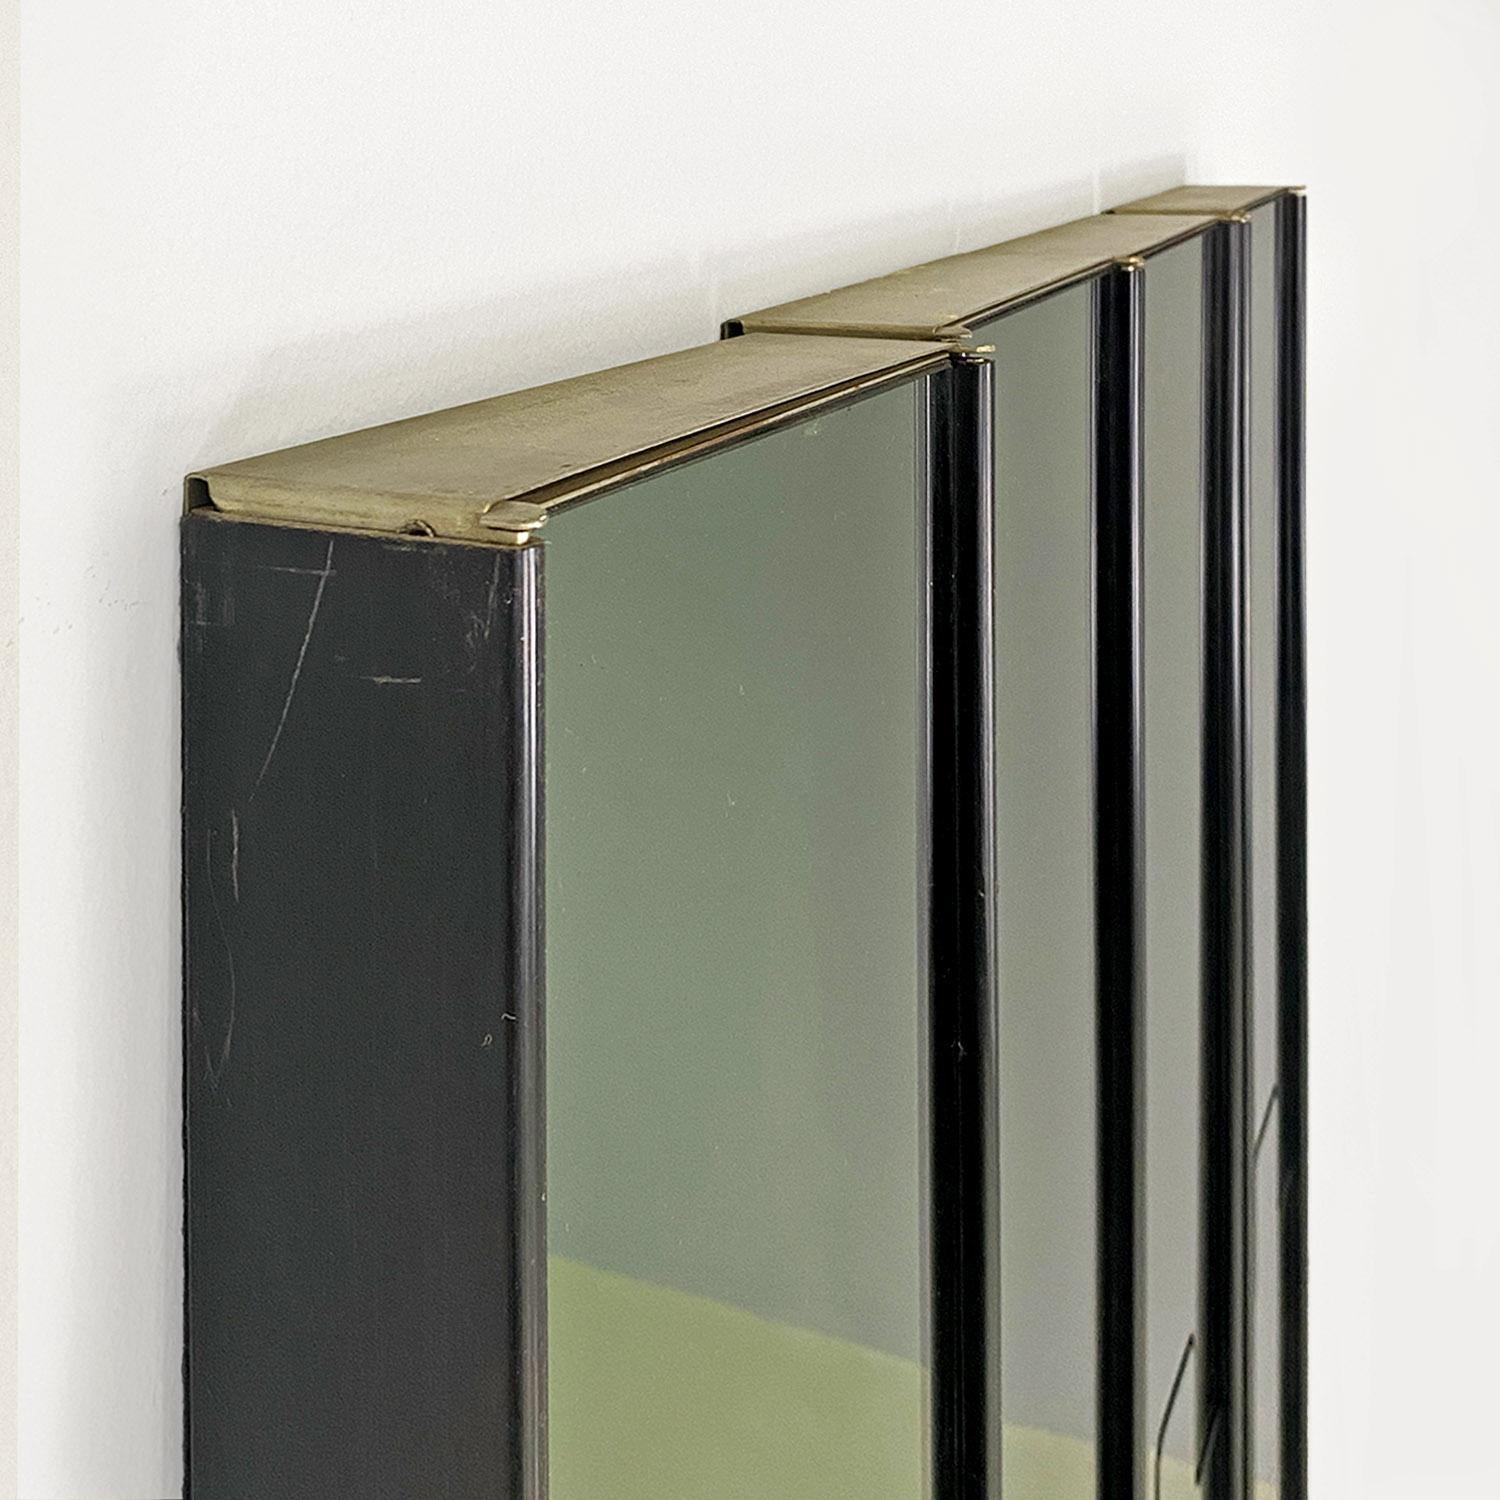 Italian modern glass plastic Gronda wall mirrors, Luciano Bertoncini, Elco 1970s For Sale 7